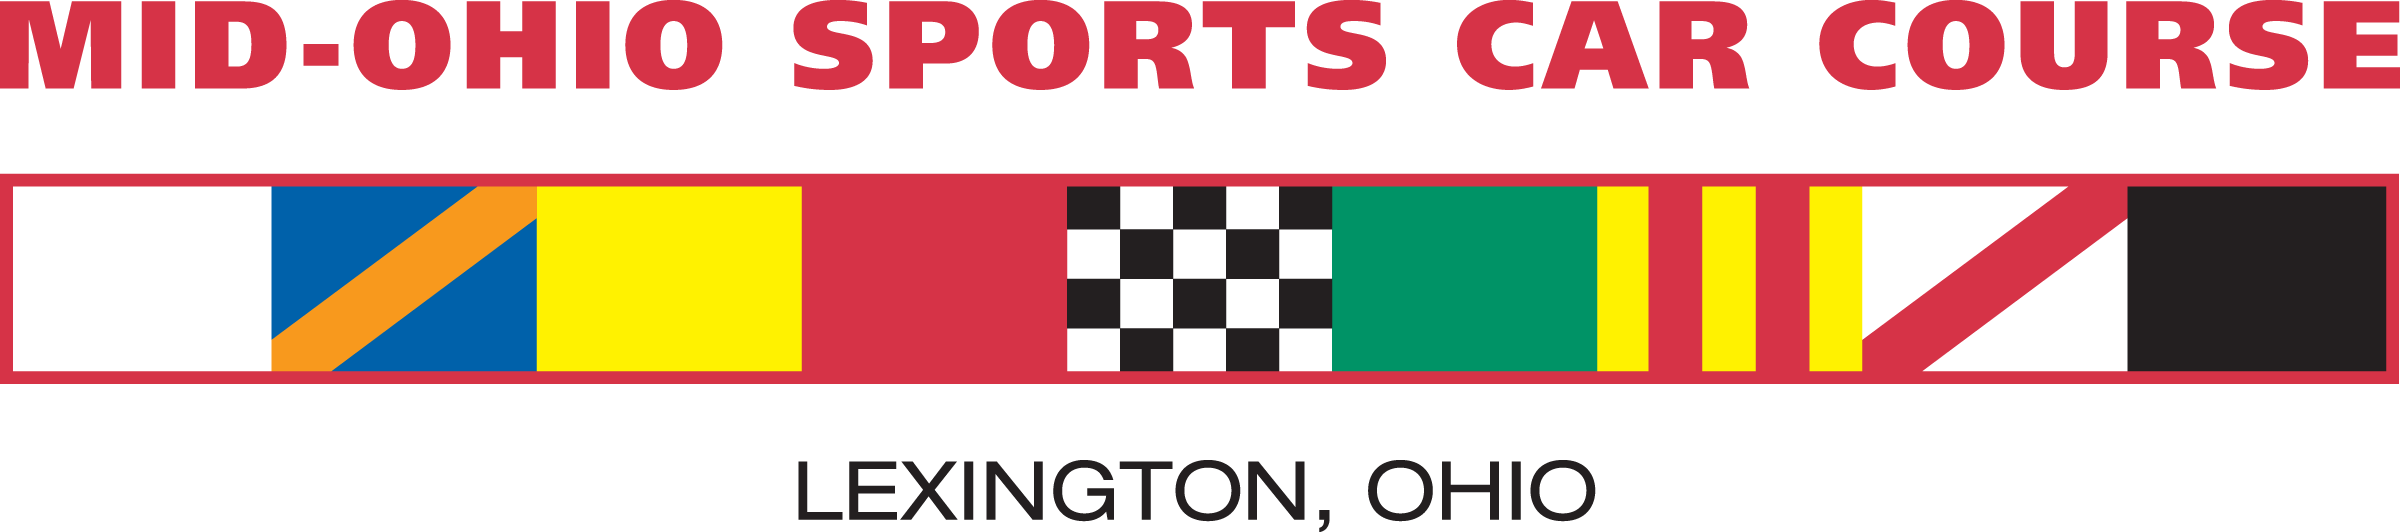 Mid-Ohio-Sports-Car-Course